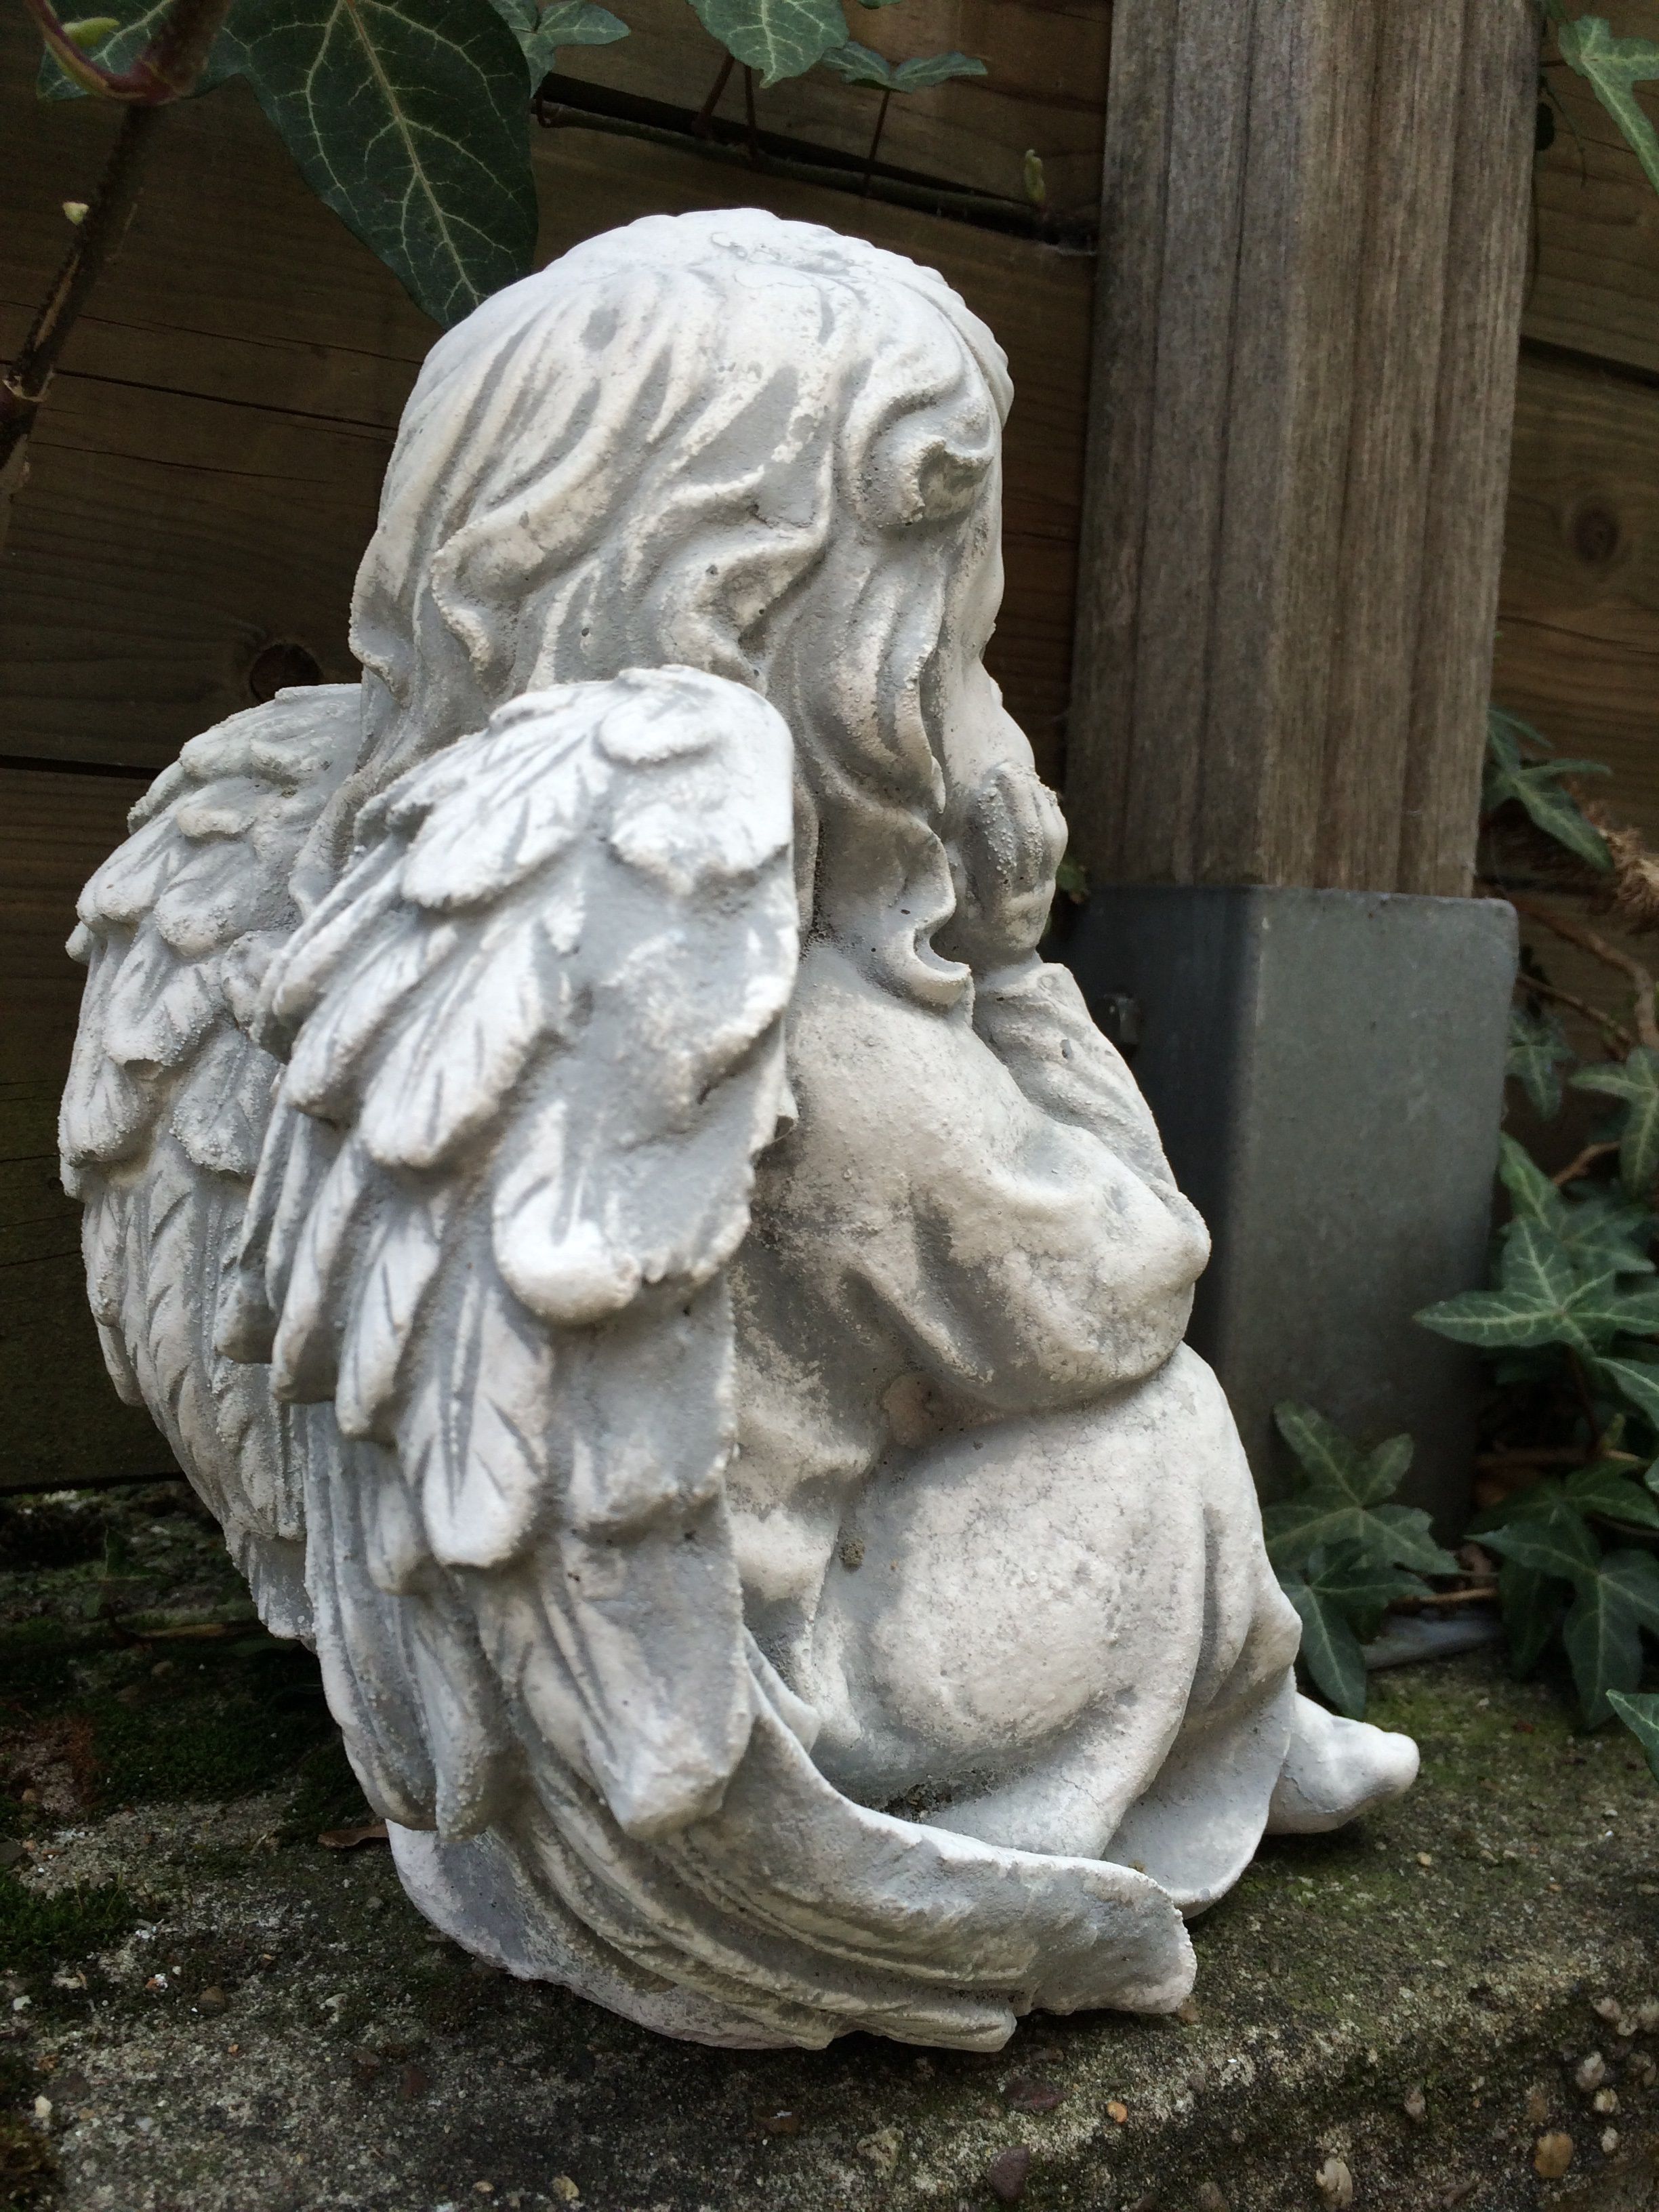 Engel sitzend voller Stein, schön im Detail